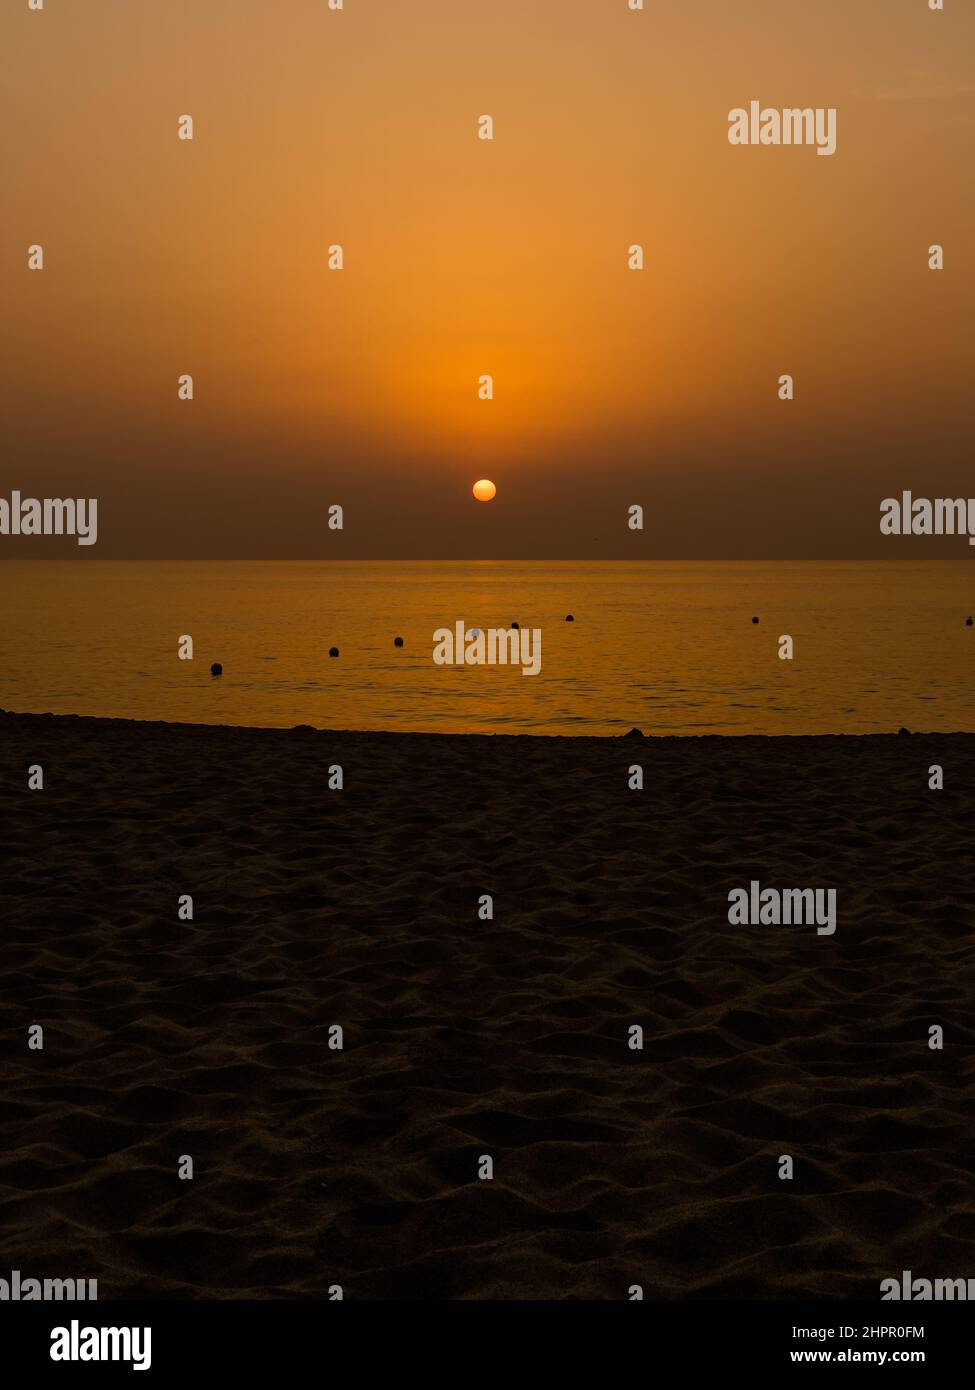 El sol anaranjado se levanta lentamente en el horizonte durante el amanecer con la arena en la playa en el primer plano todavía oscura. Foto de stock